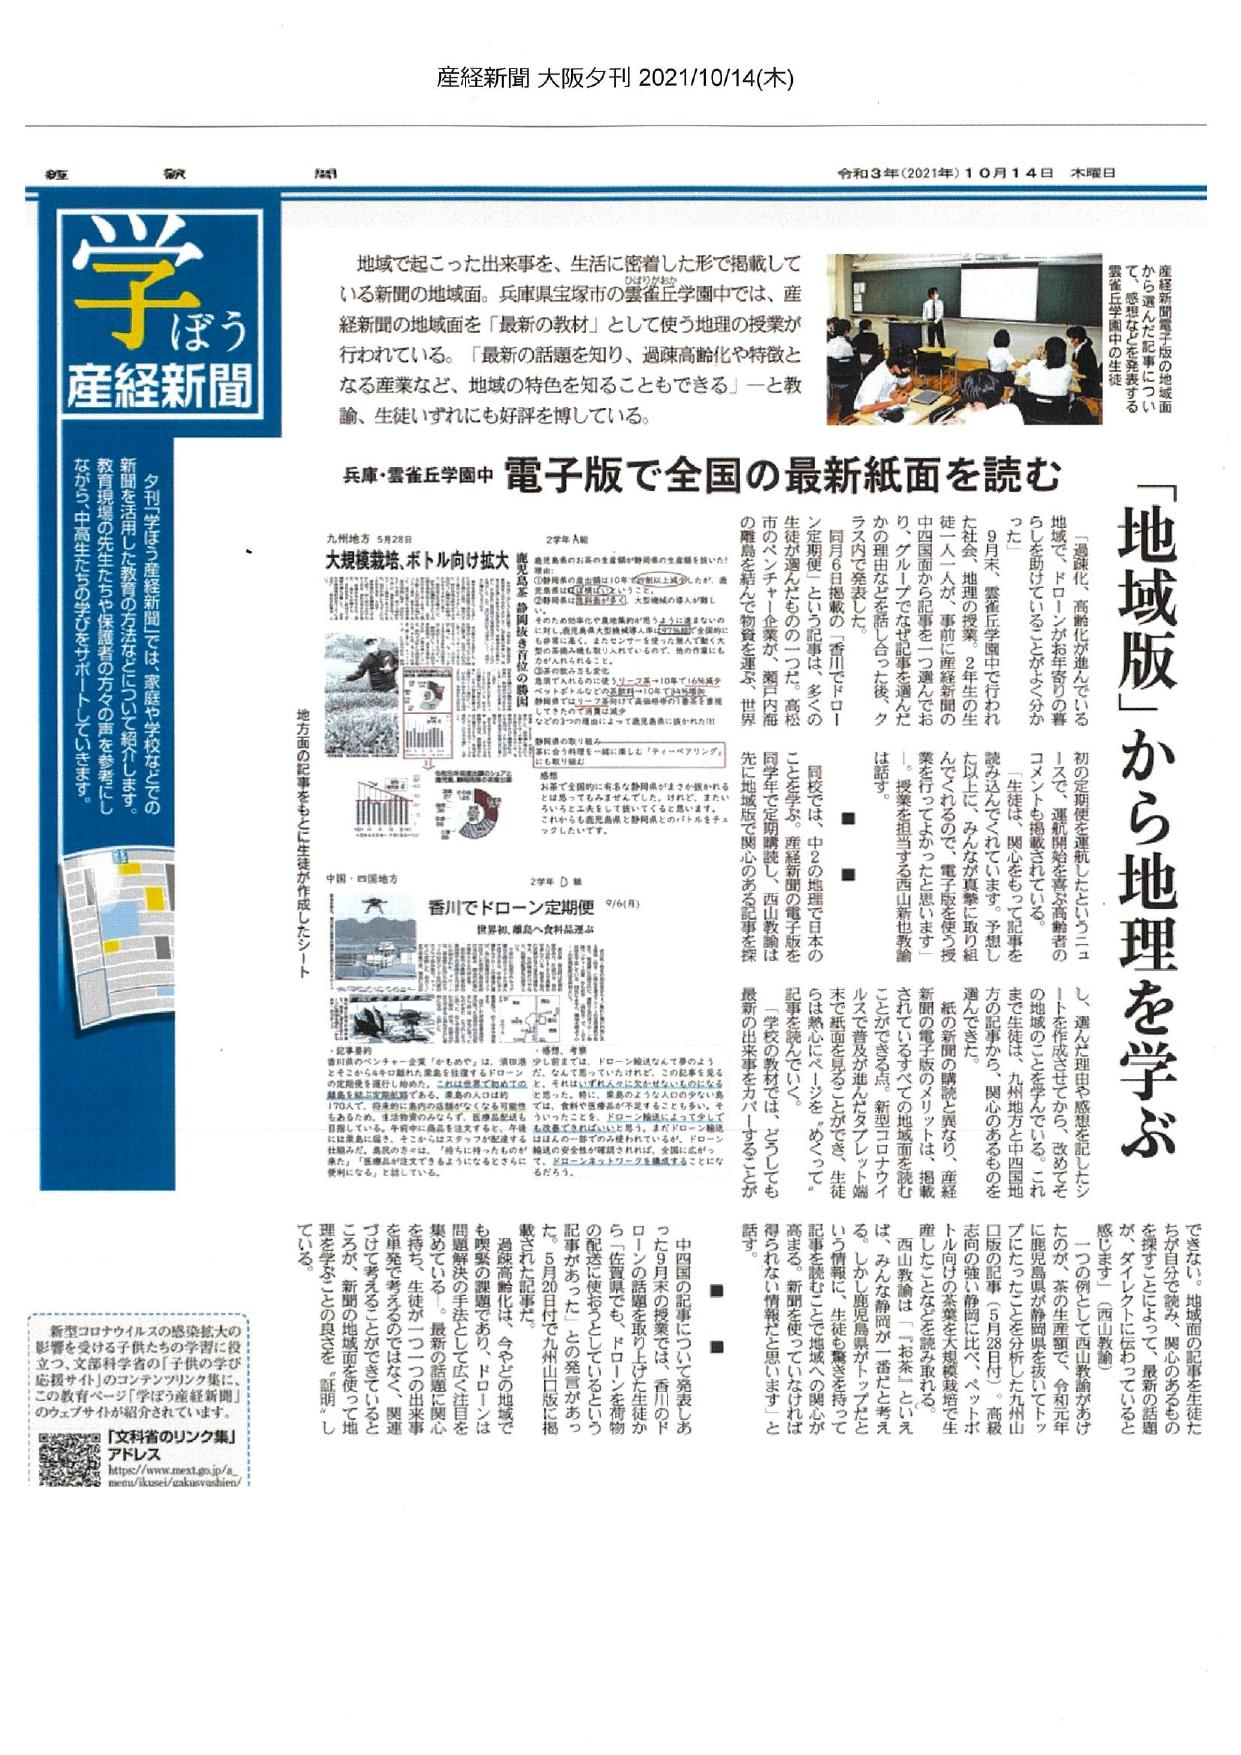 産経新聞中2新聞学習記事_page-0001.jpg